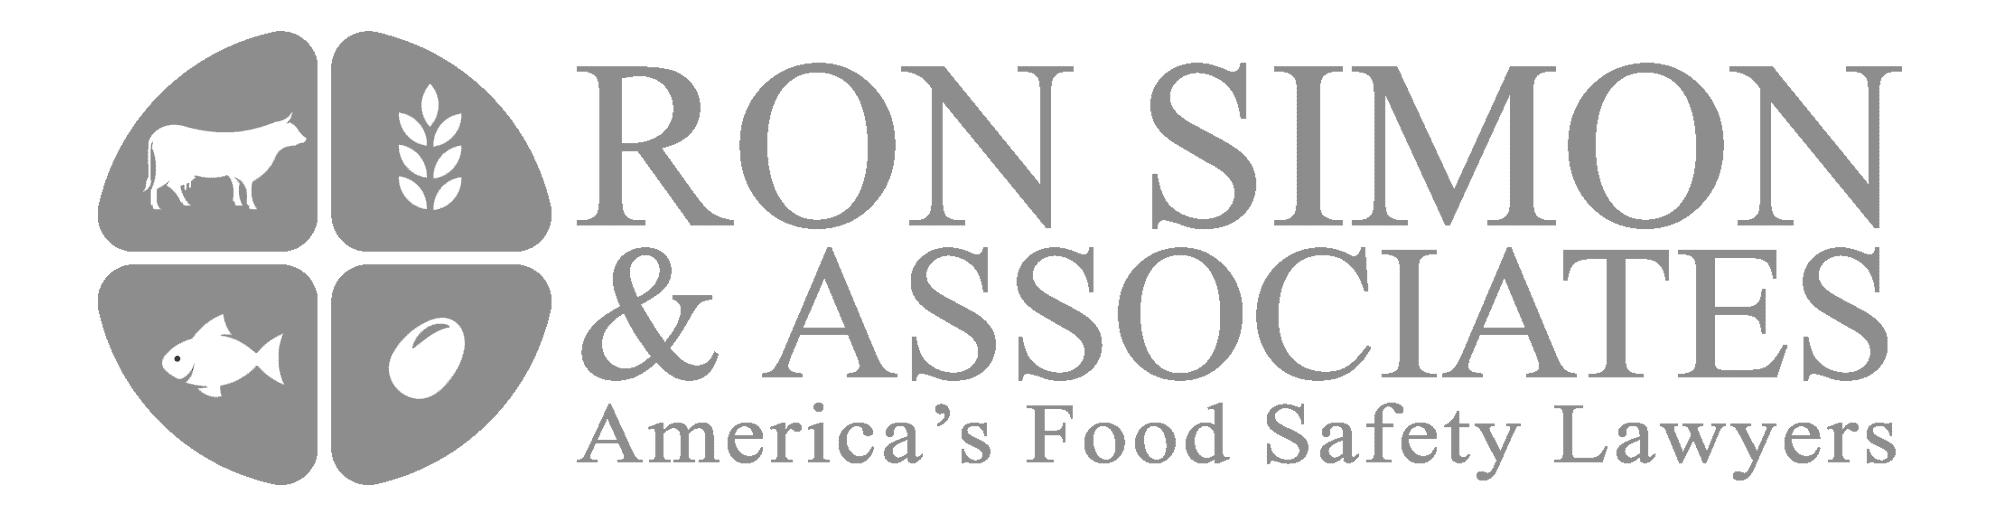 Ron Simon & Associate logo